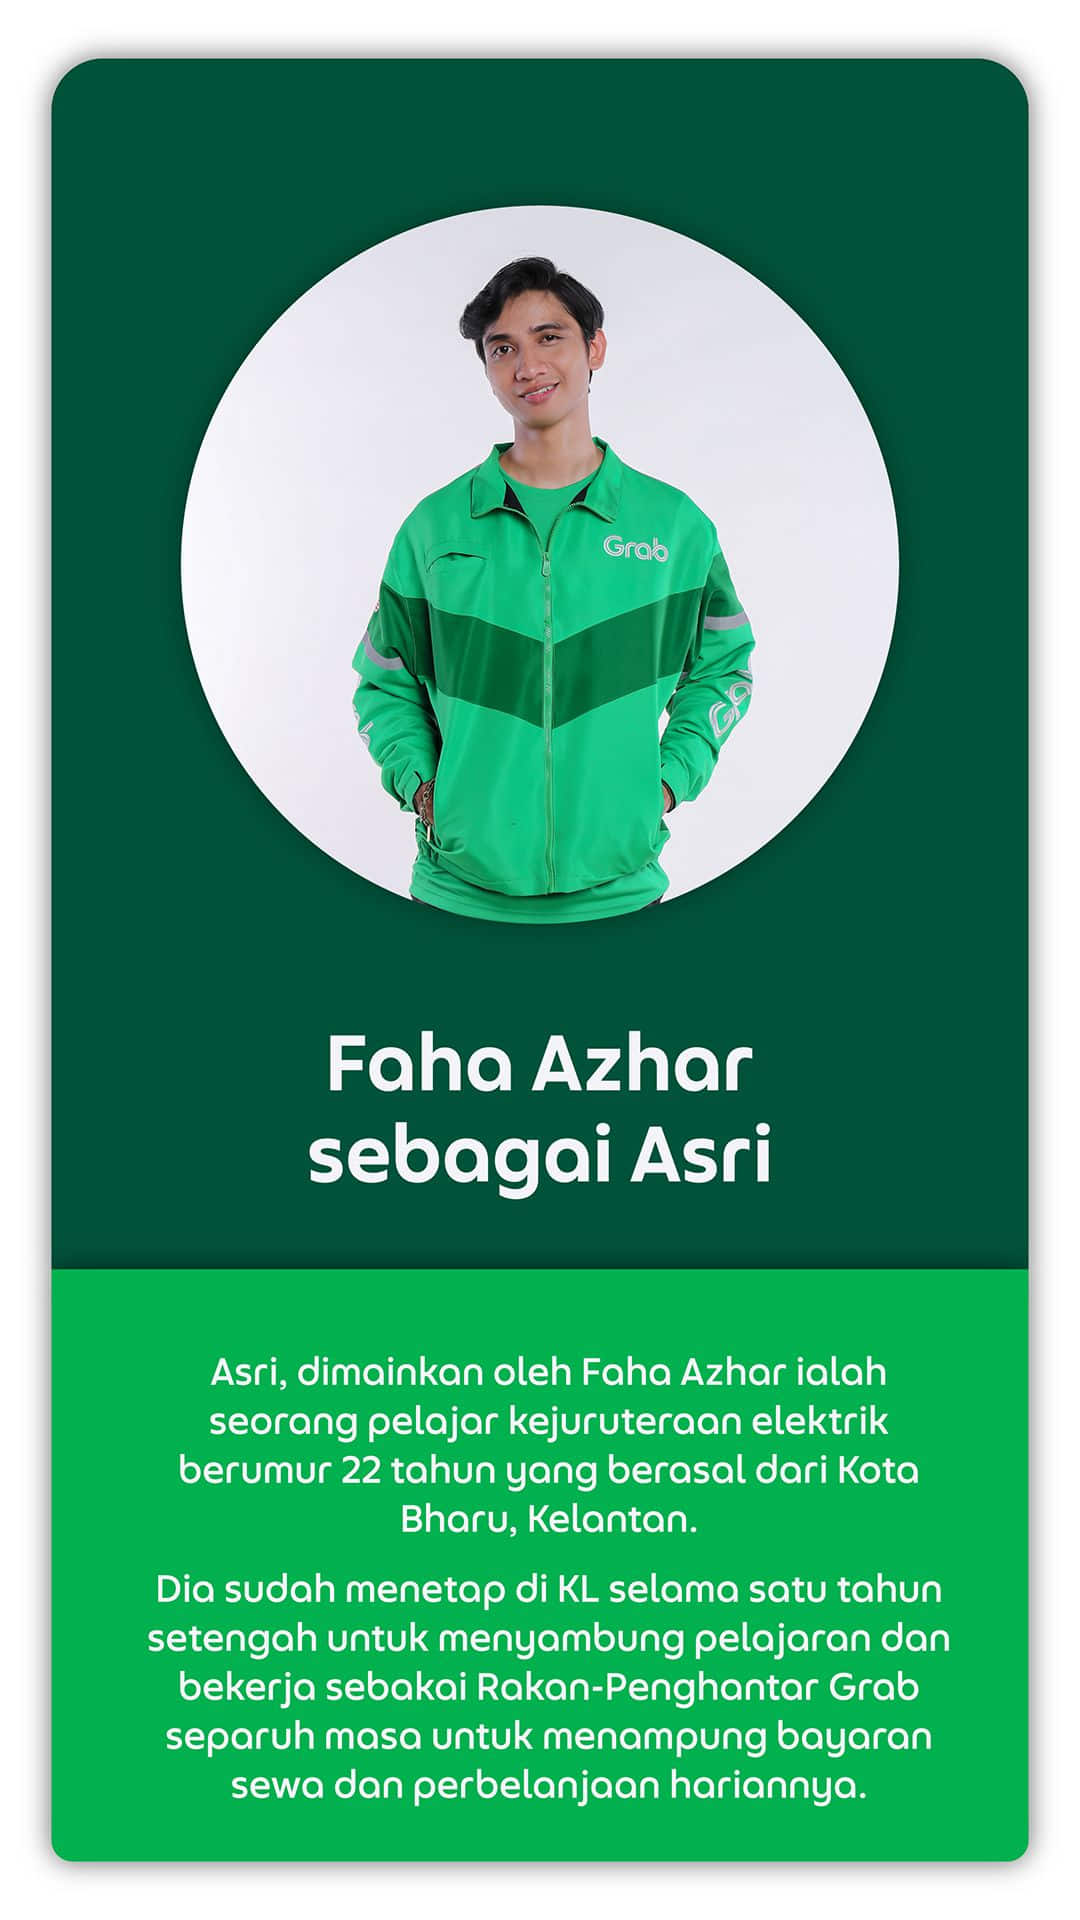 Faha Azhar sebagai Asri